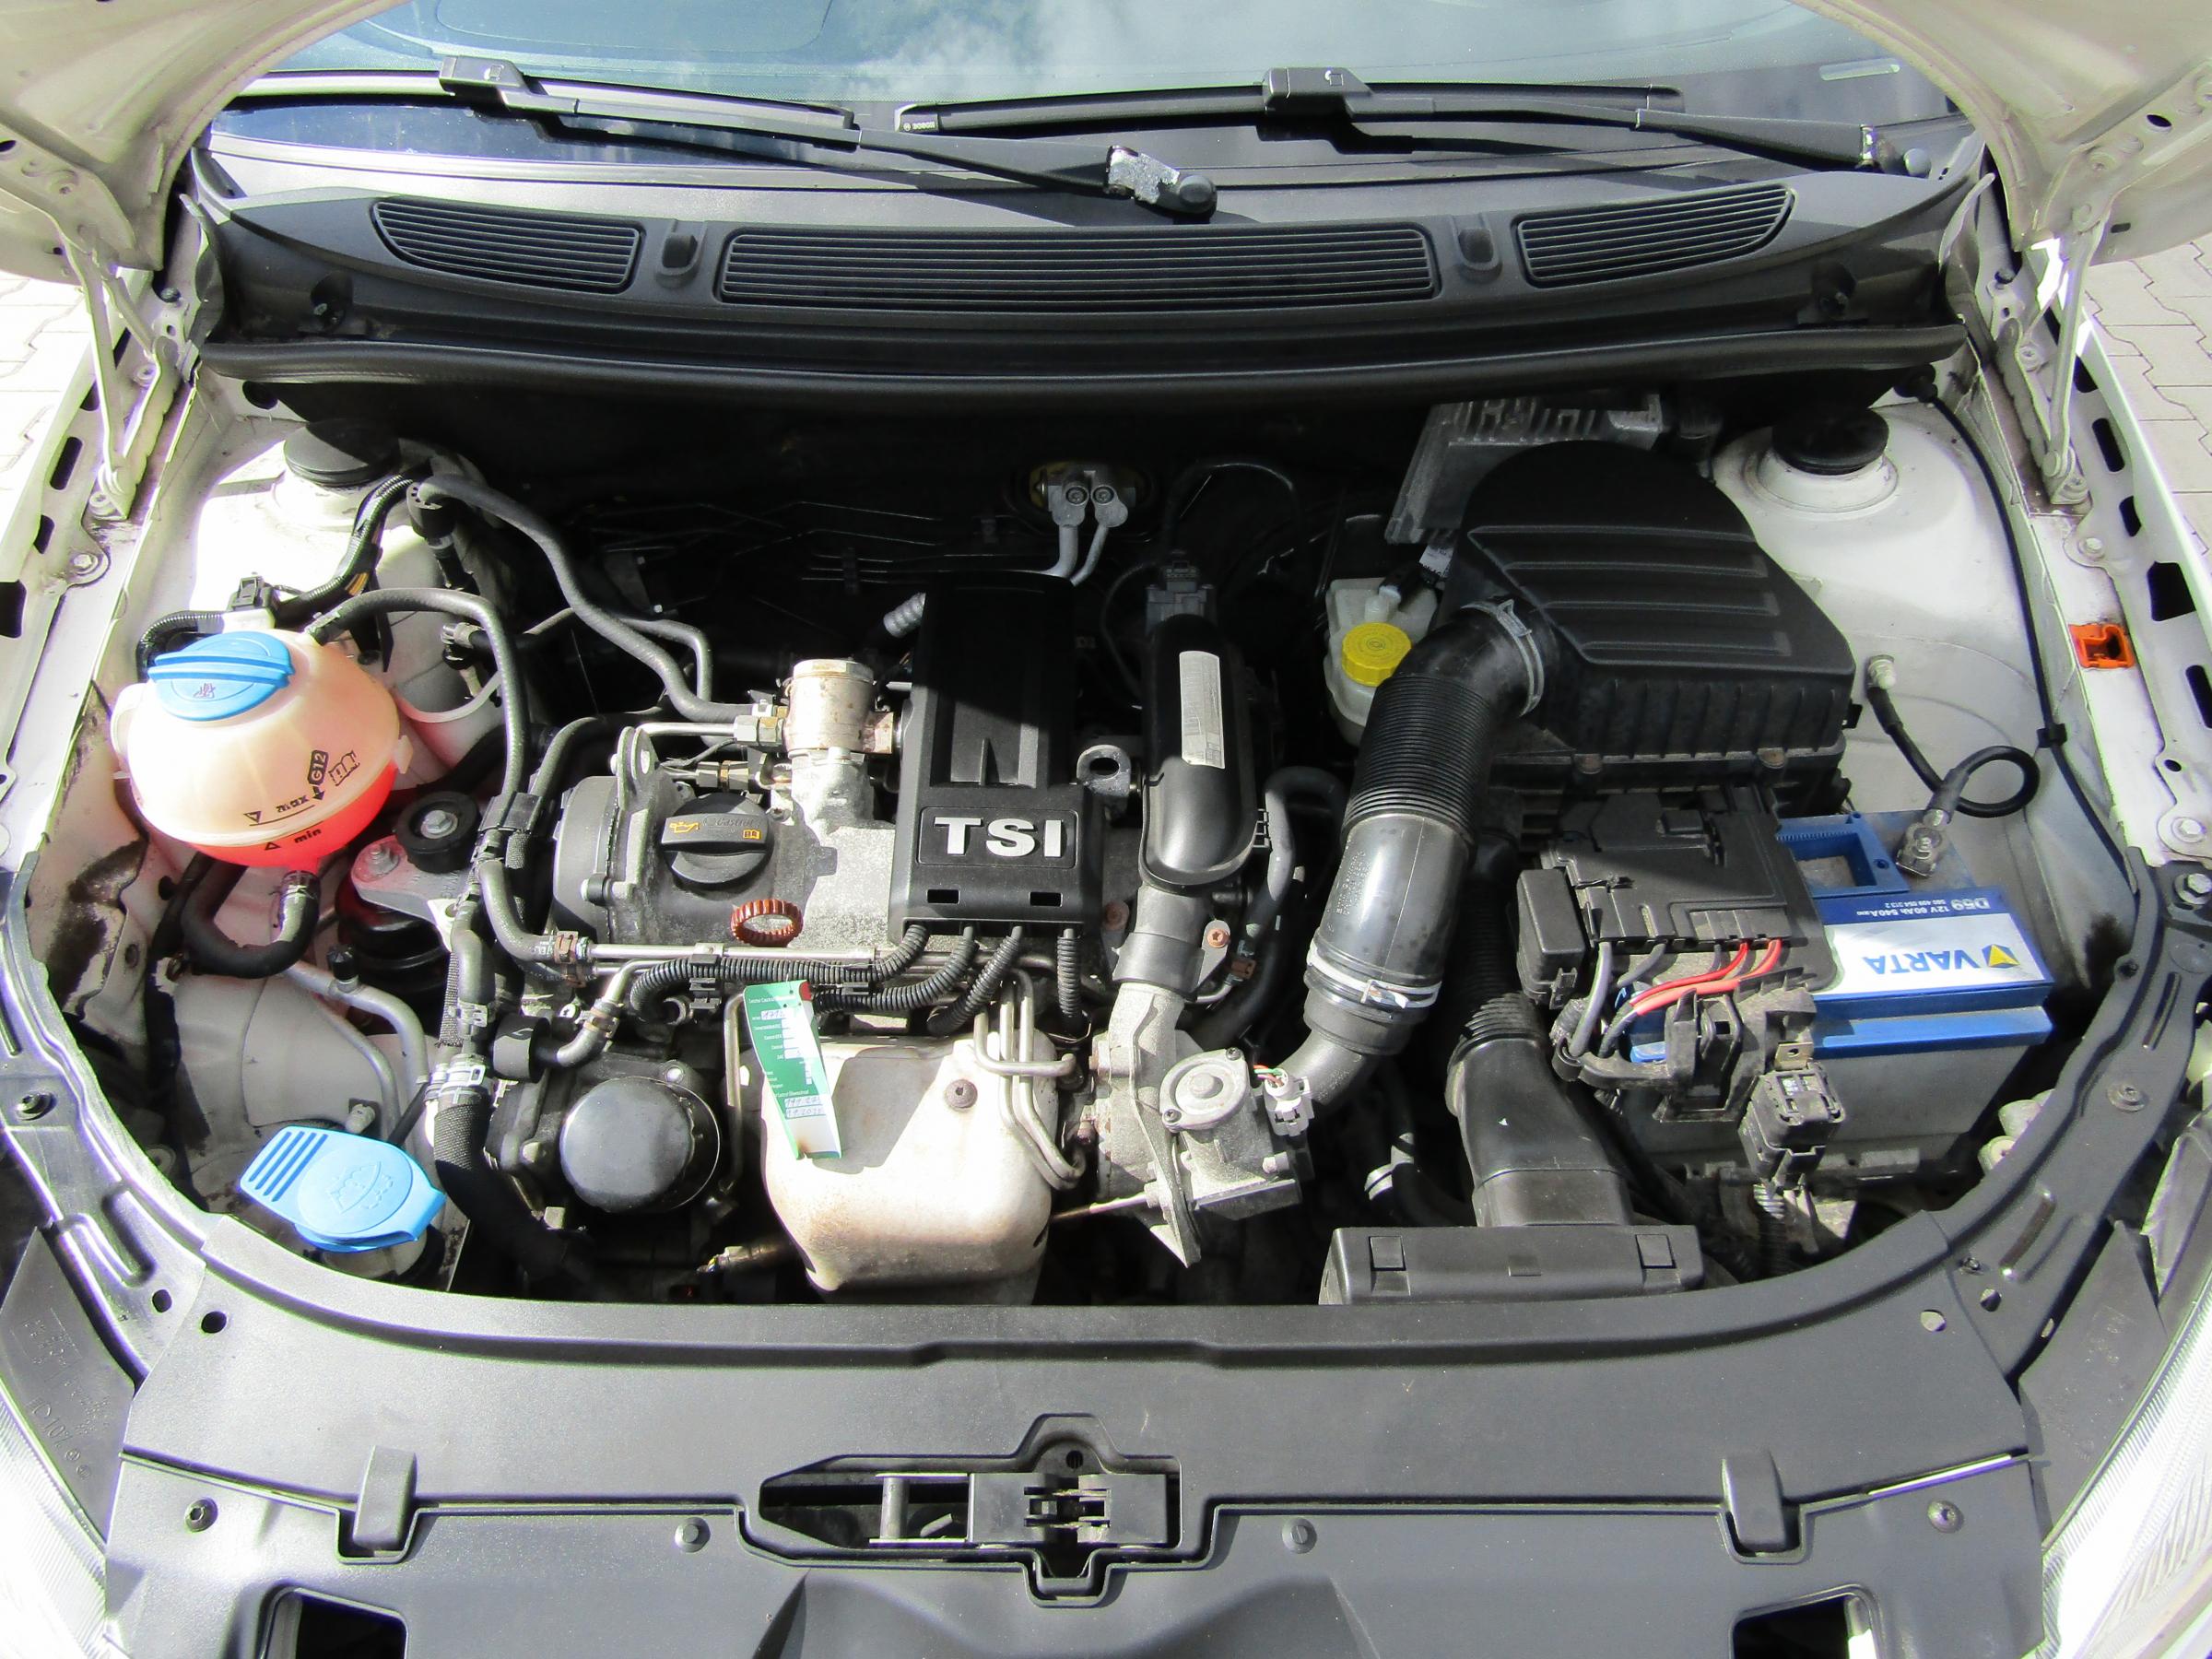 Škoda Roomster, 2011 - pohled č. 7